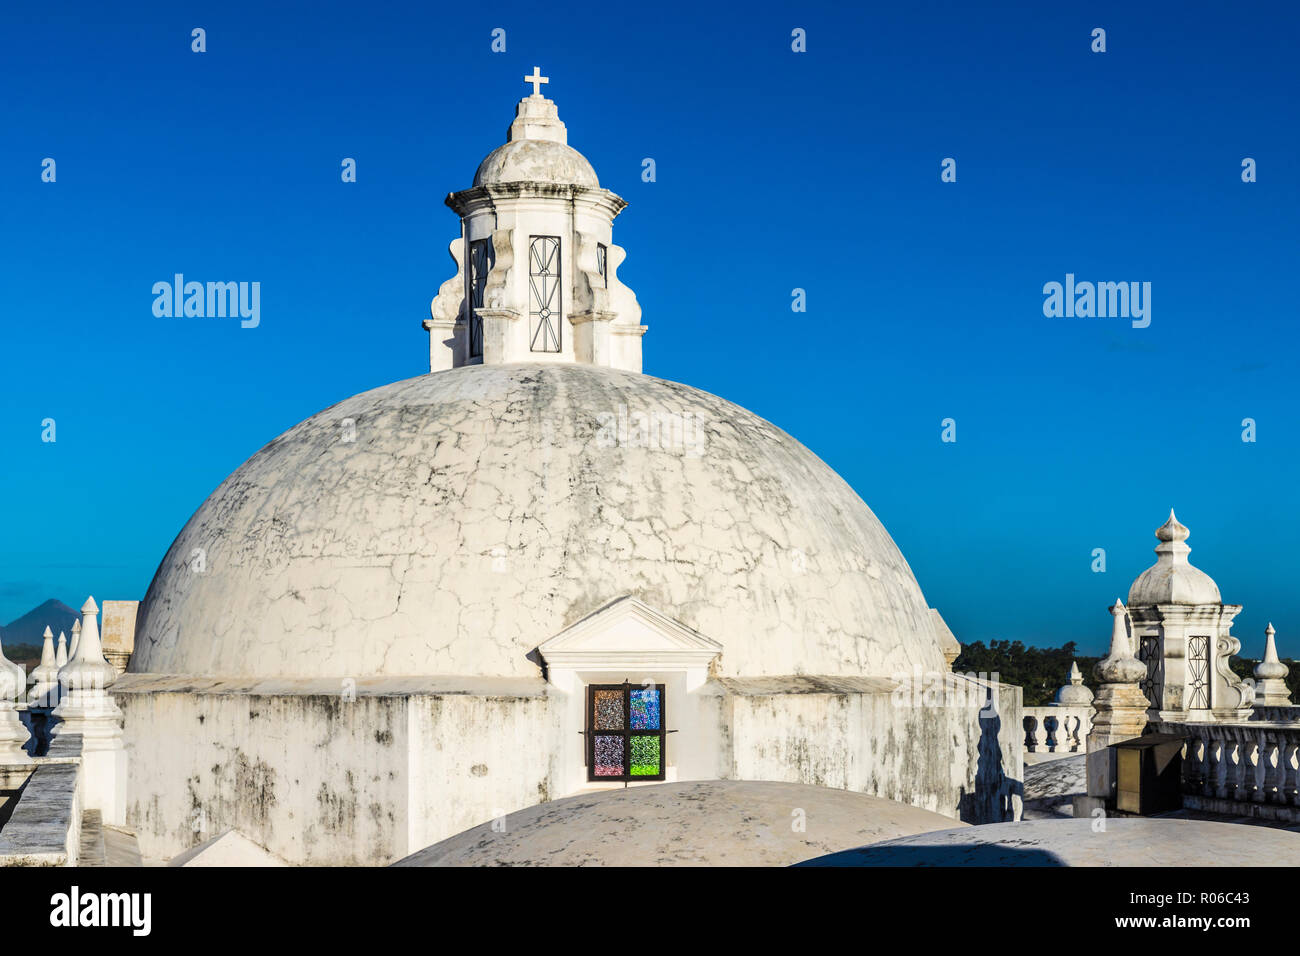 Die schönen weißen Kuppeln auf dem Dach der Kathedrale Mariä Himmelfahrt, UNESCO-Weltkulturerbe, Leon, Nicaragua, Mittelamerika Stockfoto